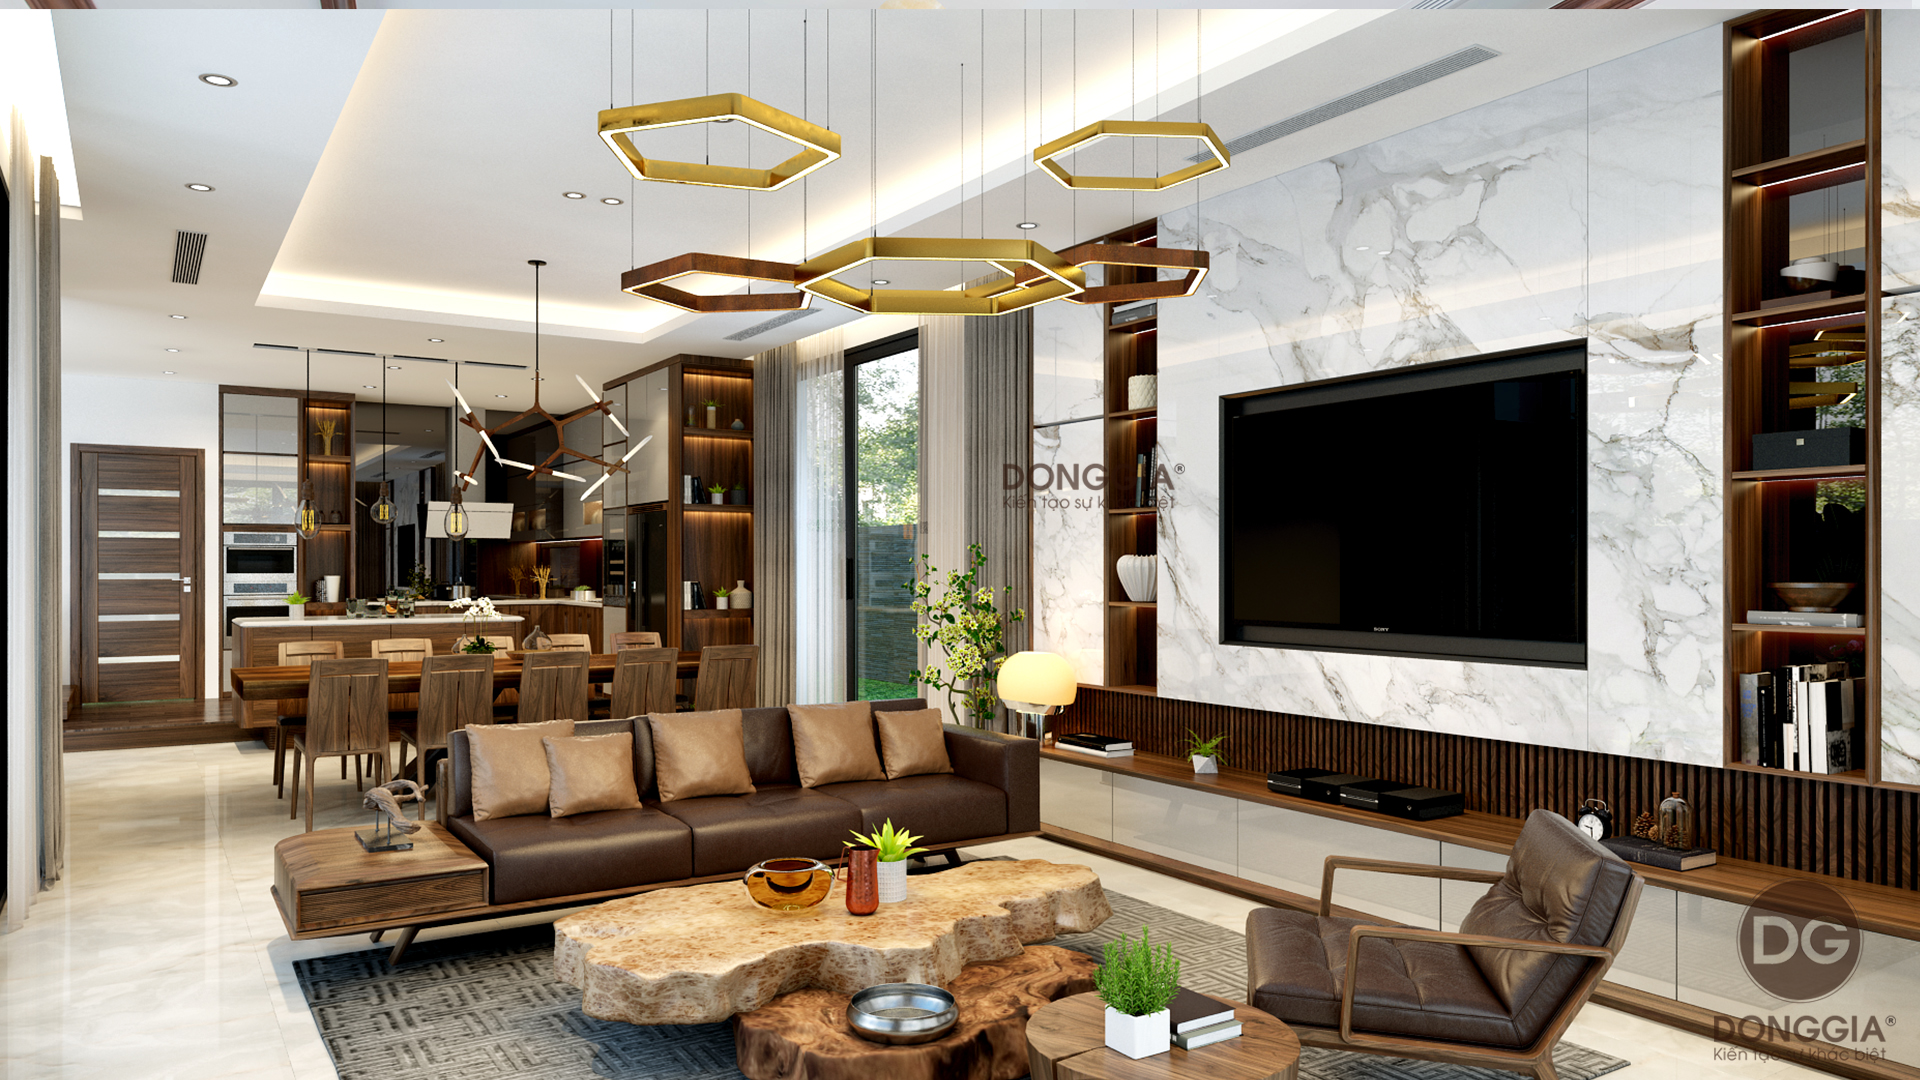 Gợi ý cách thiết kế phòng khách kết hợp bếp cho nhà nhỏ 2 tầng đẹp KN602108   Kiến trúc Angcovat